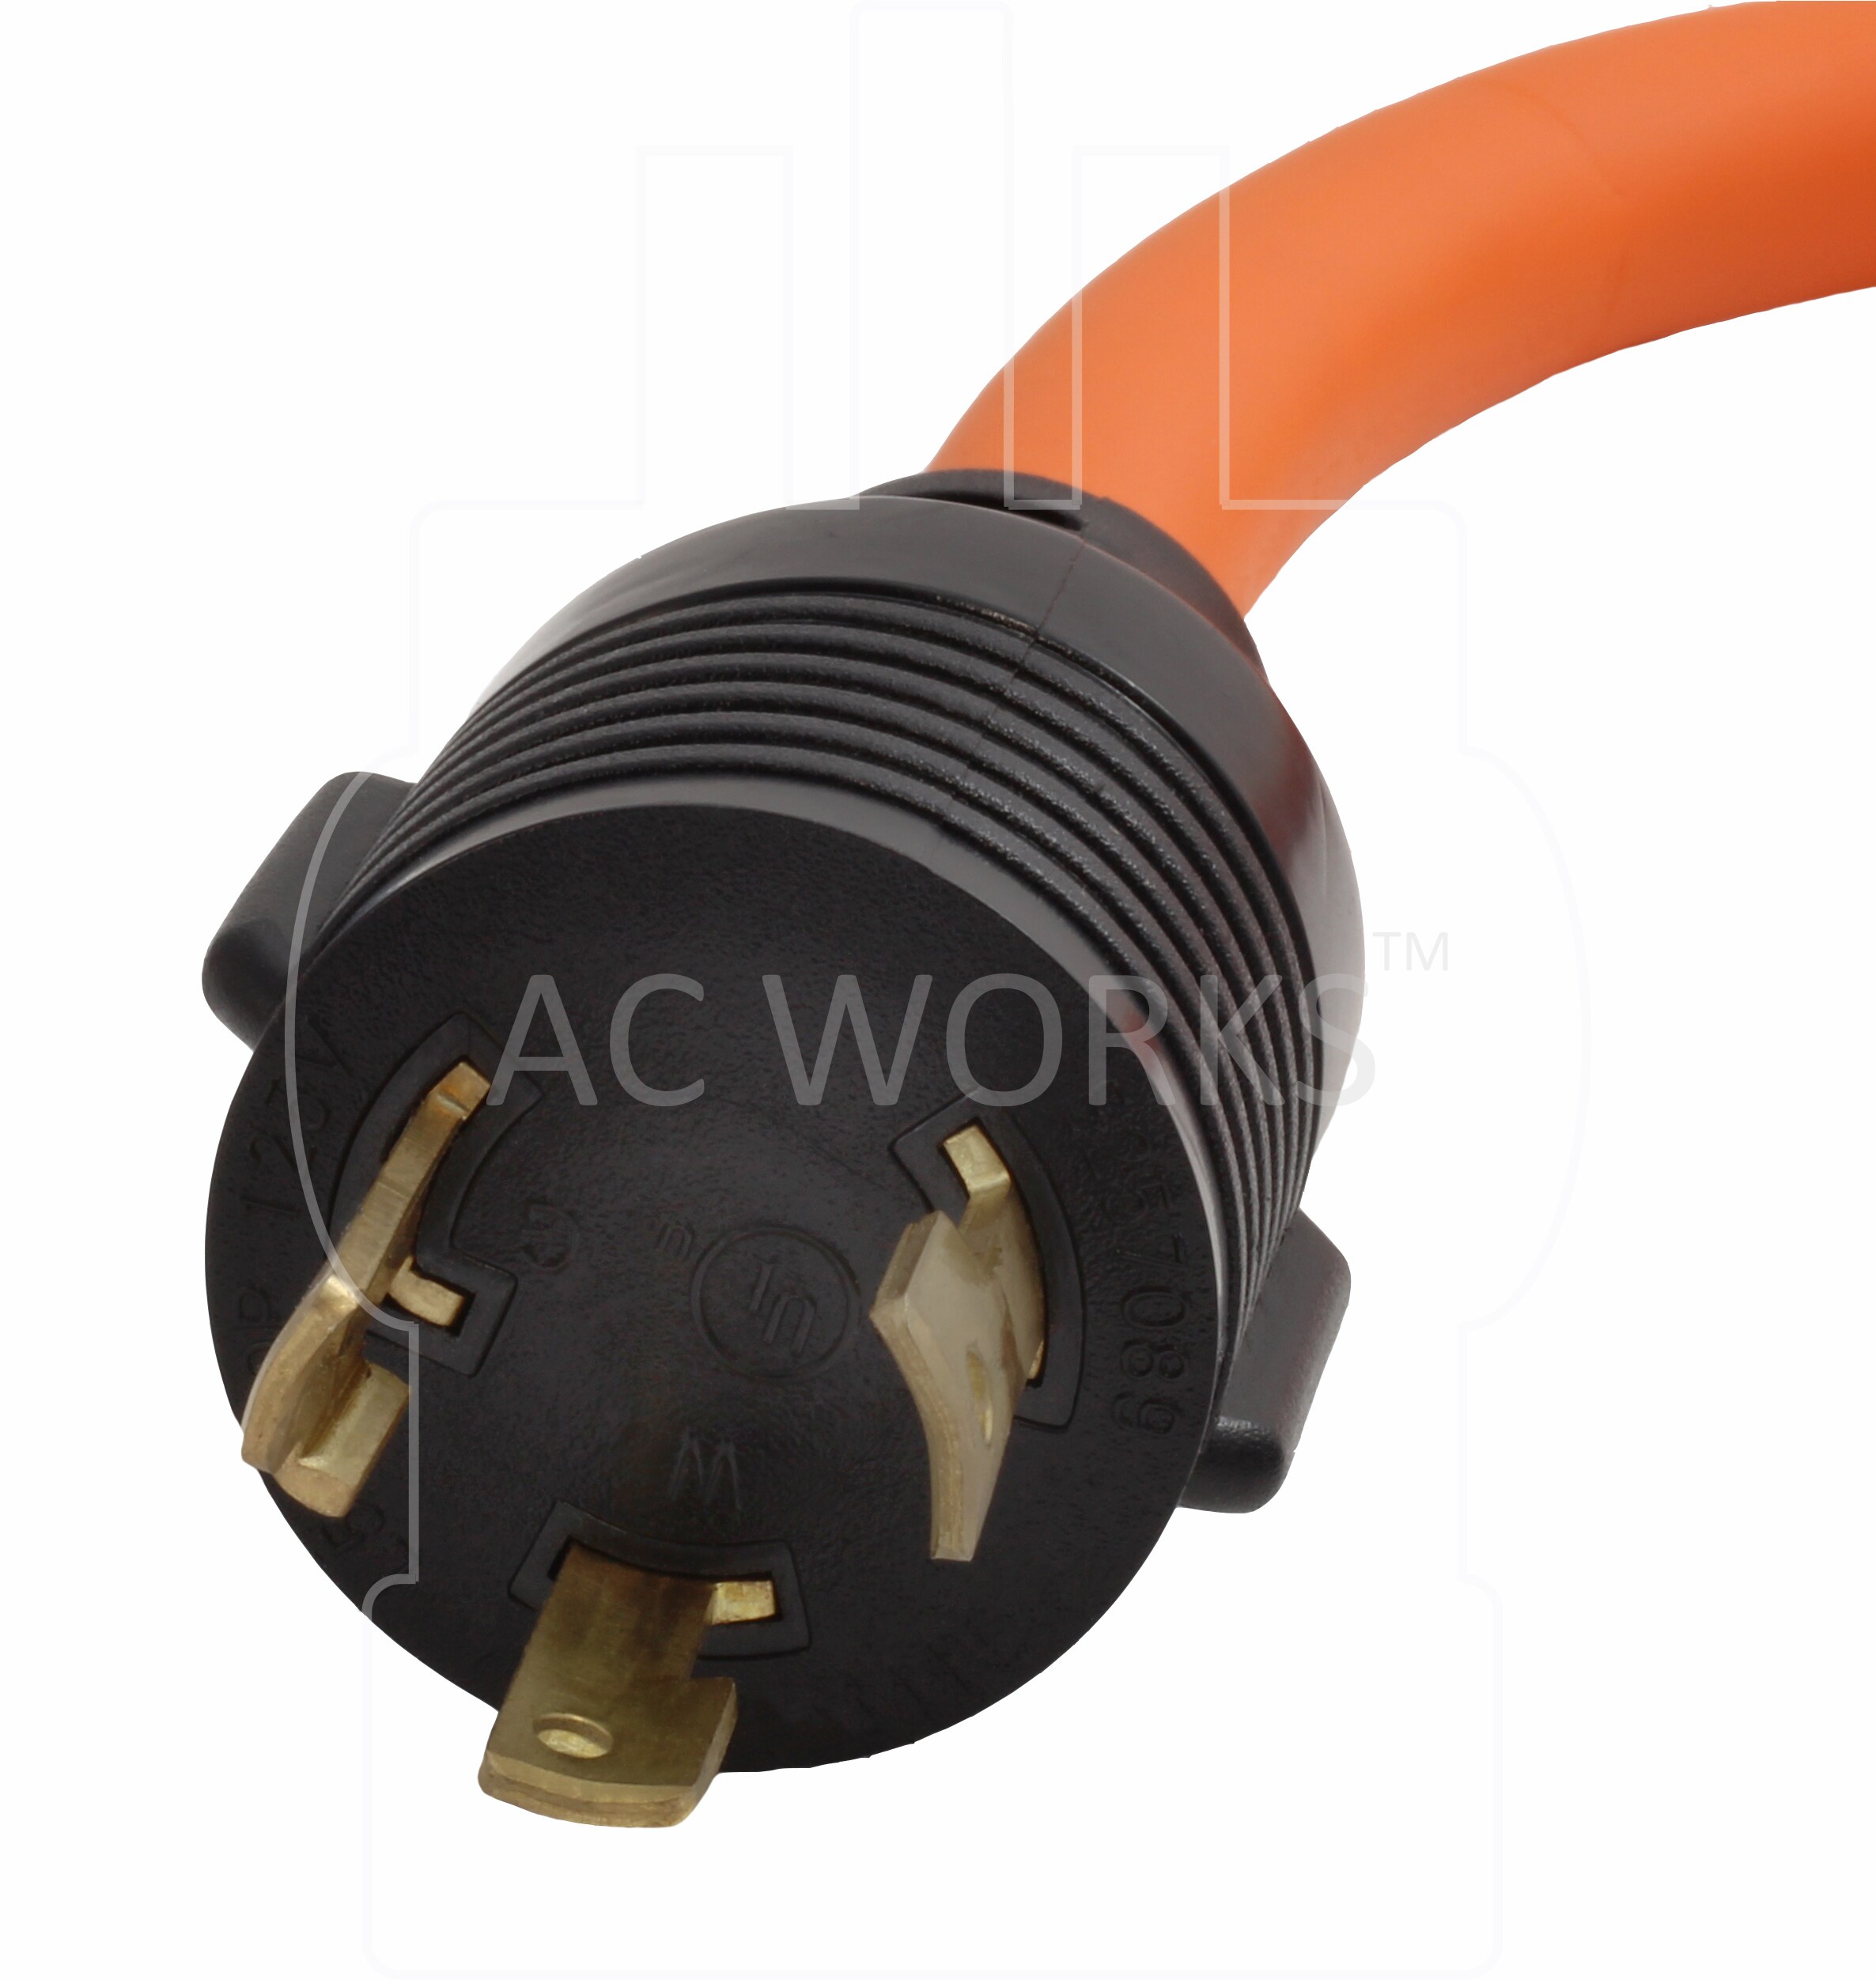 Flexible Power Distribution Adapter NEMA L5-30P to 3 NEMA 5-15R by AC WORKS® 